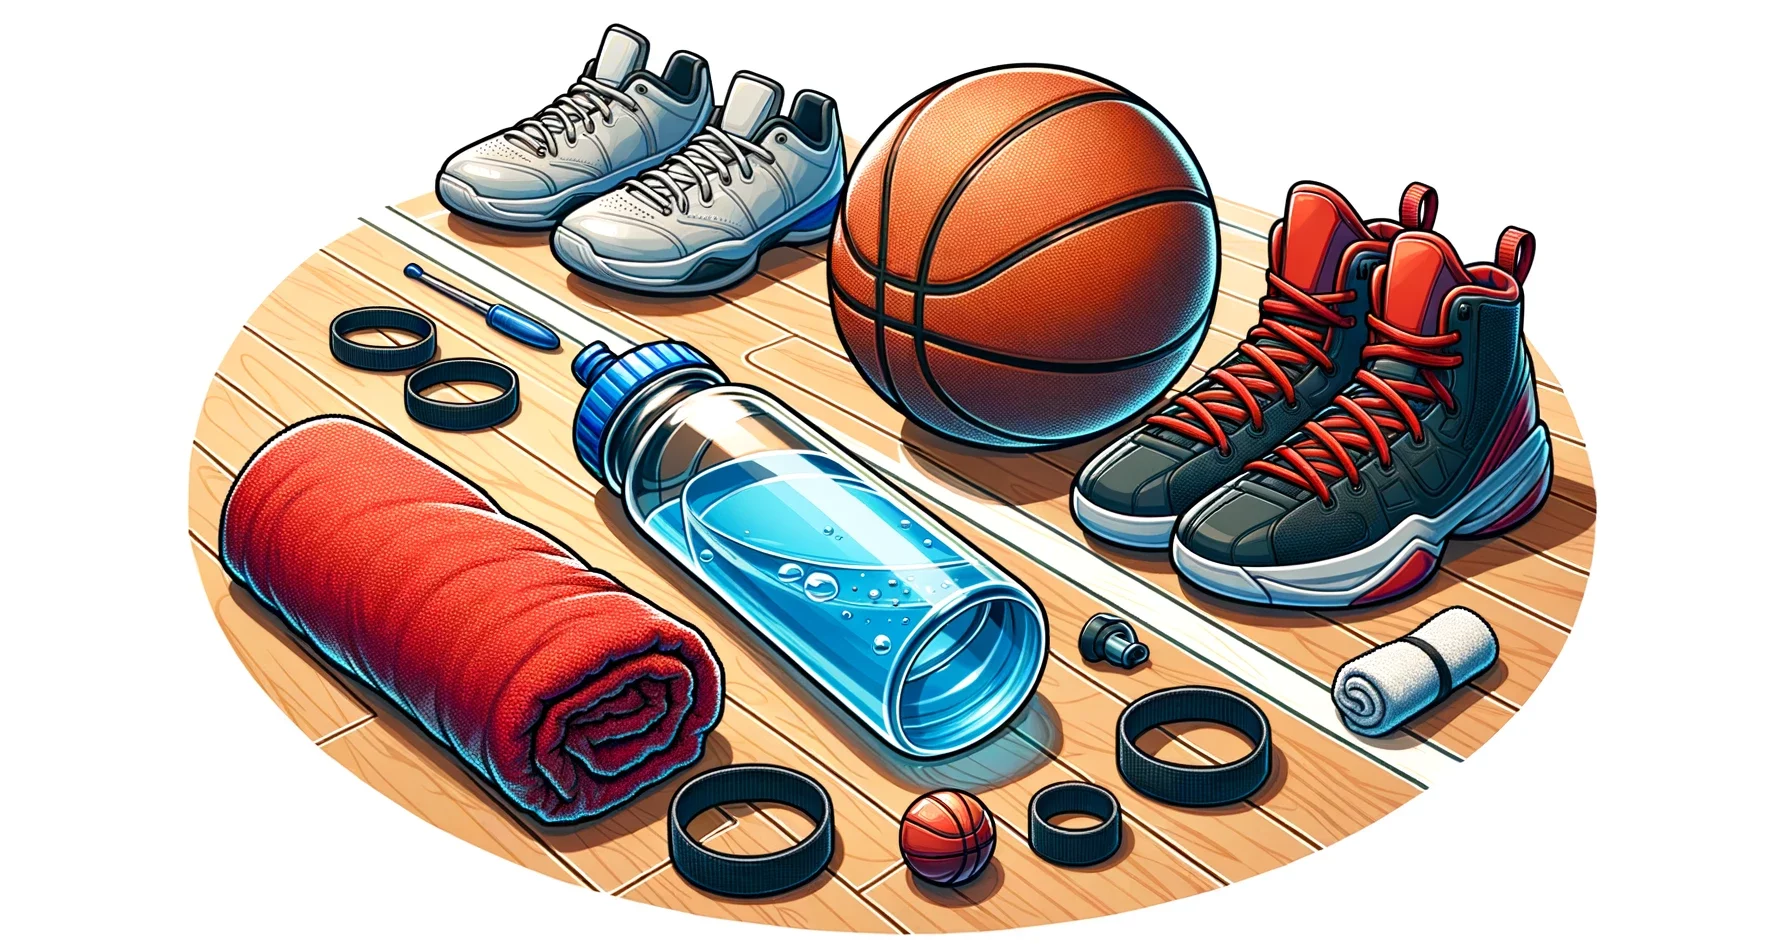 Basketball-Zusatzausrüstungen. Dazu gehören Gegenstände wie eine Wasserflasche, ein Handtuch, Armbänder, Knieschoner und eine Basketballpumpe.